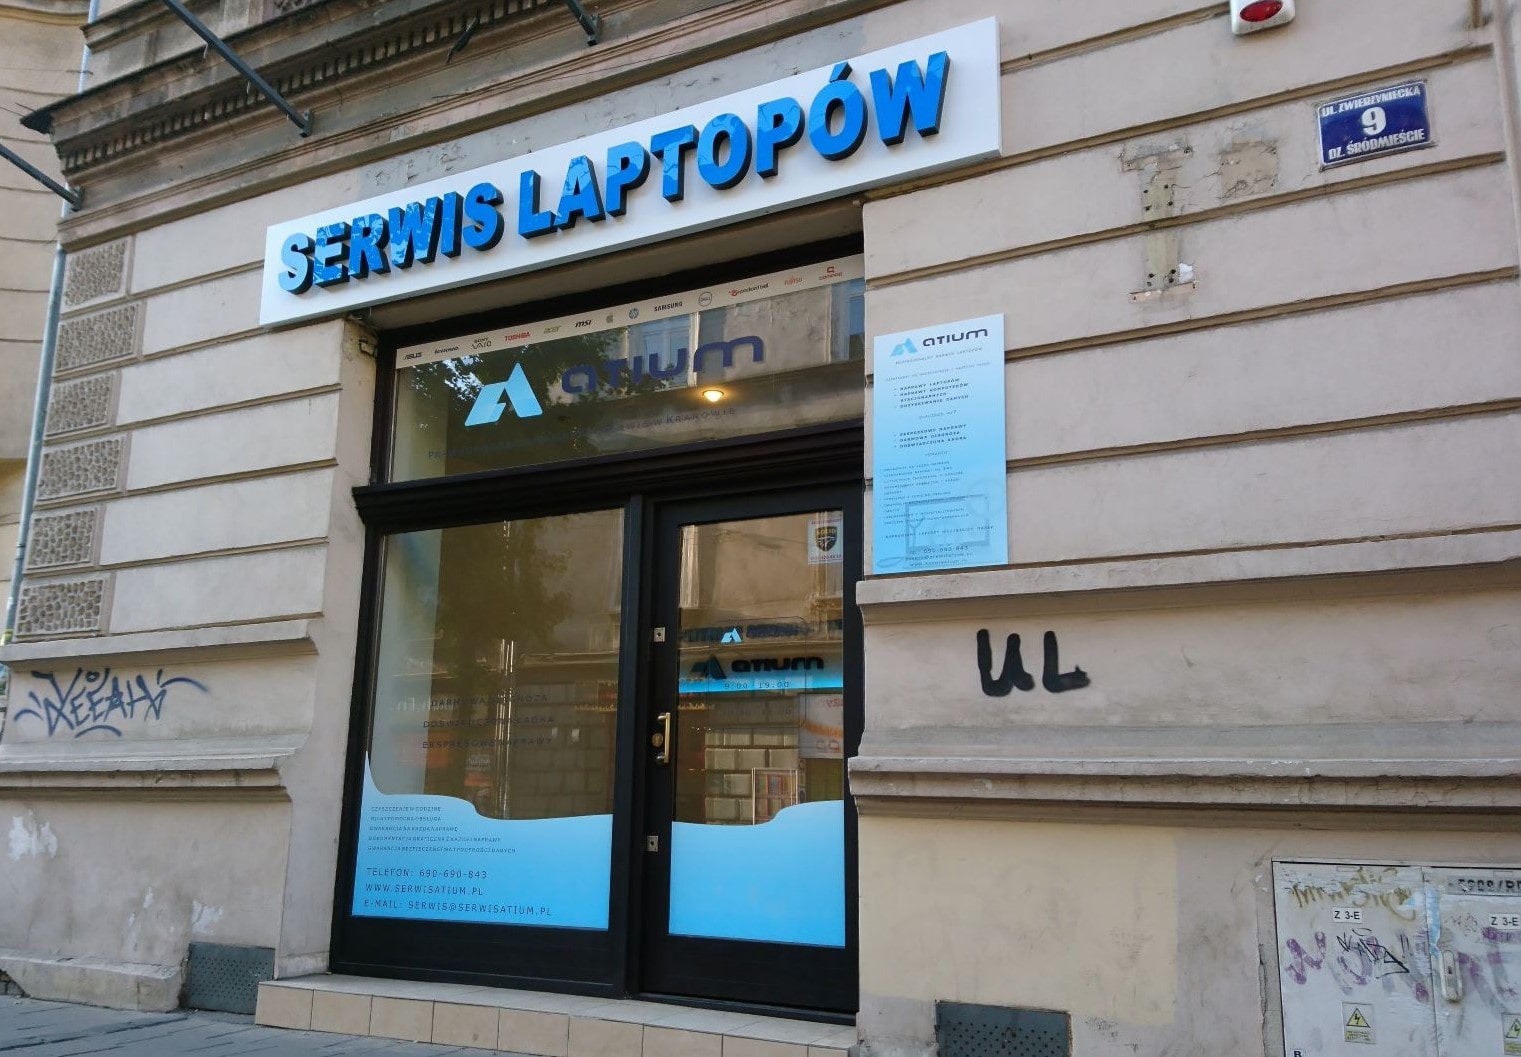 Witryna serwisu laptopów Atium w Krakowie